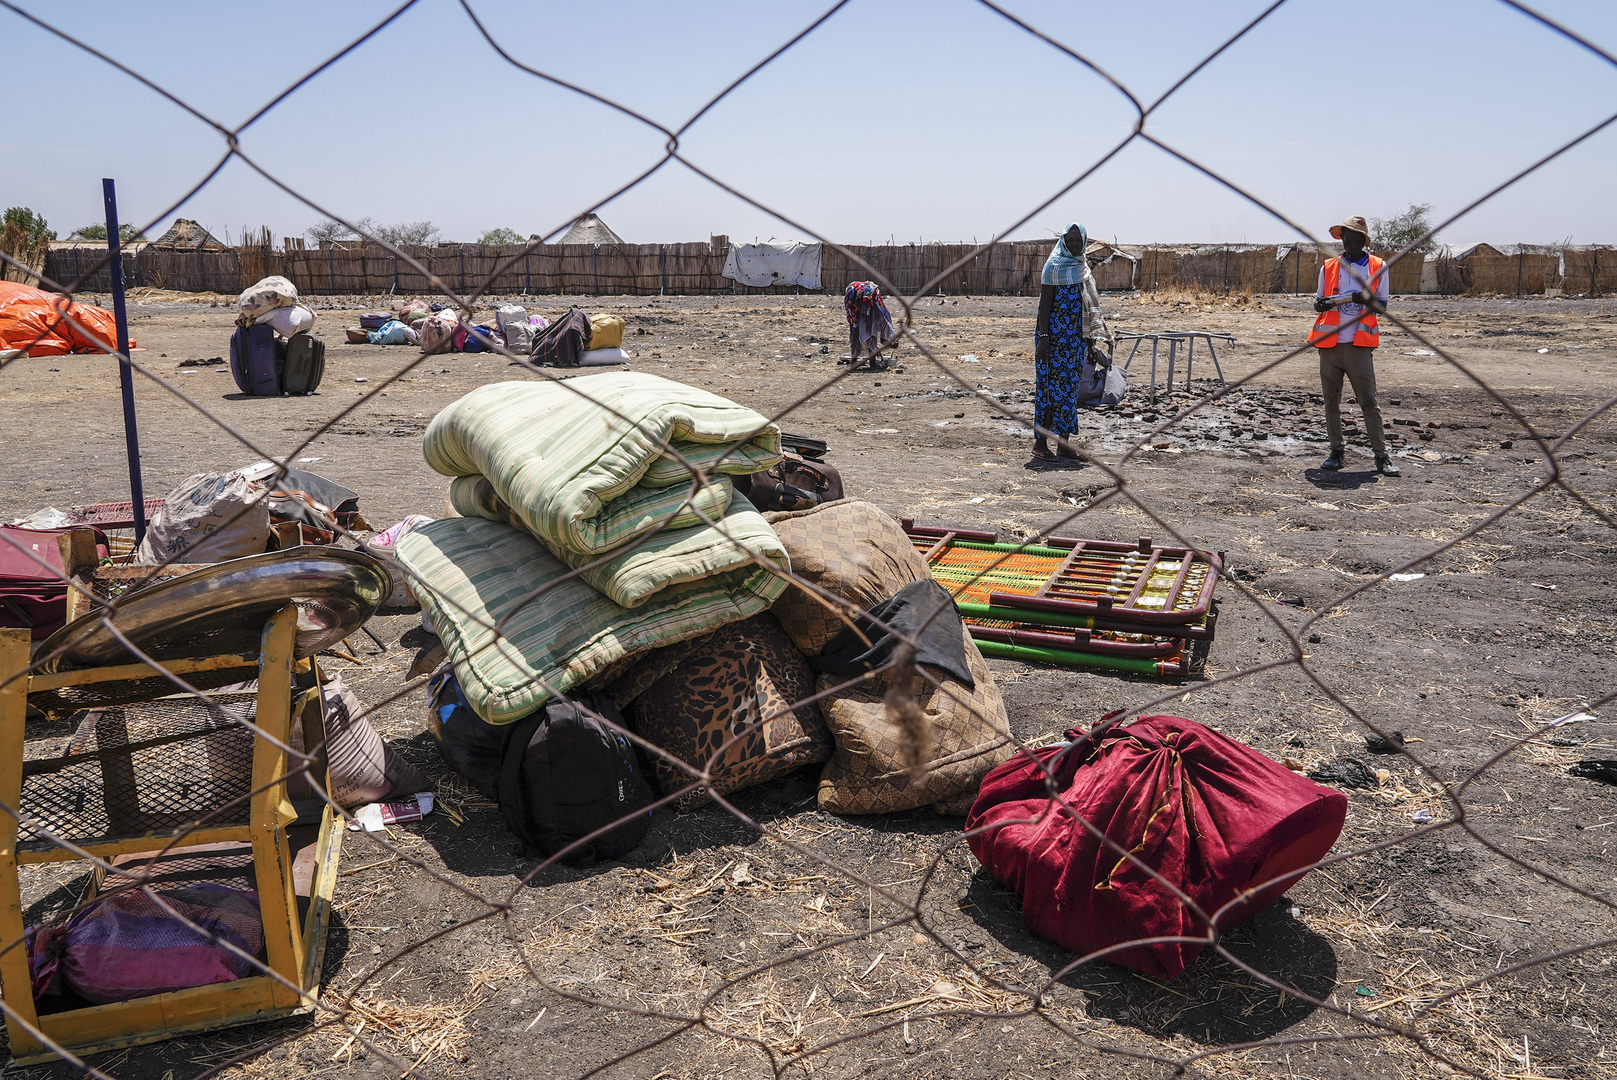 الأمم المتحدة: السودان يشهد إحدى أسوأ الكوارث الإنسانية في الذاكرة الحديثة